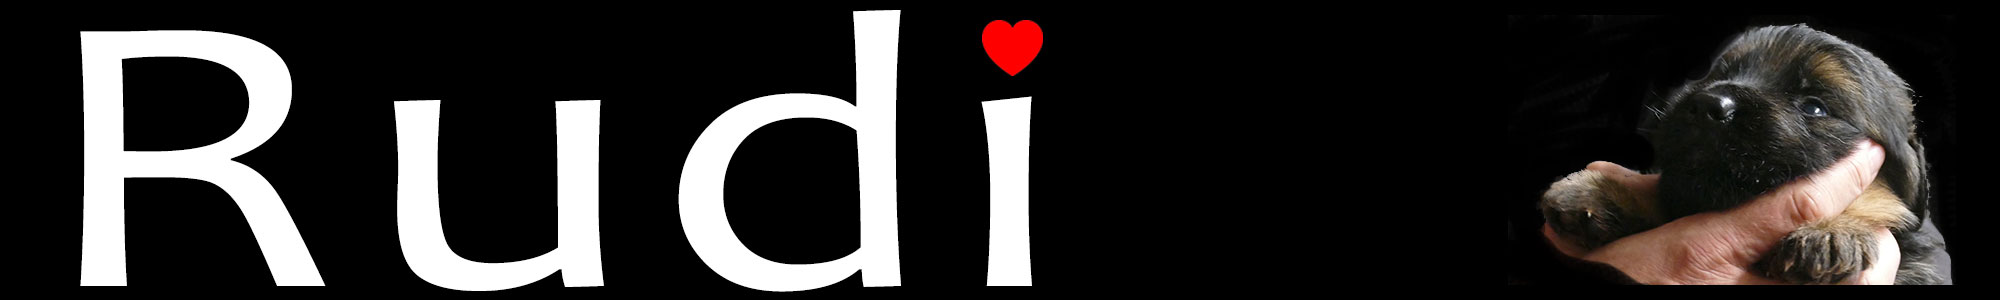 Rudi Logo